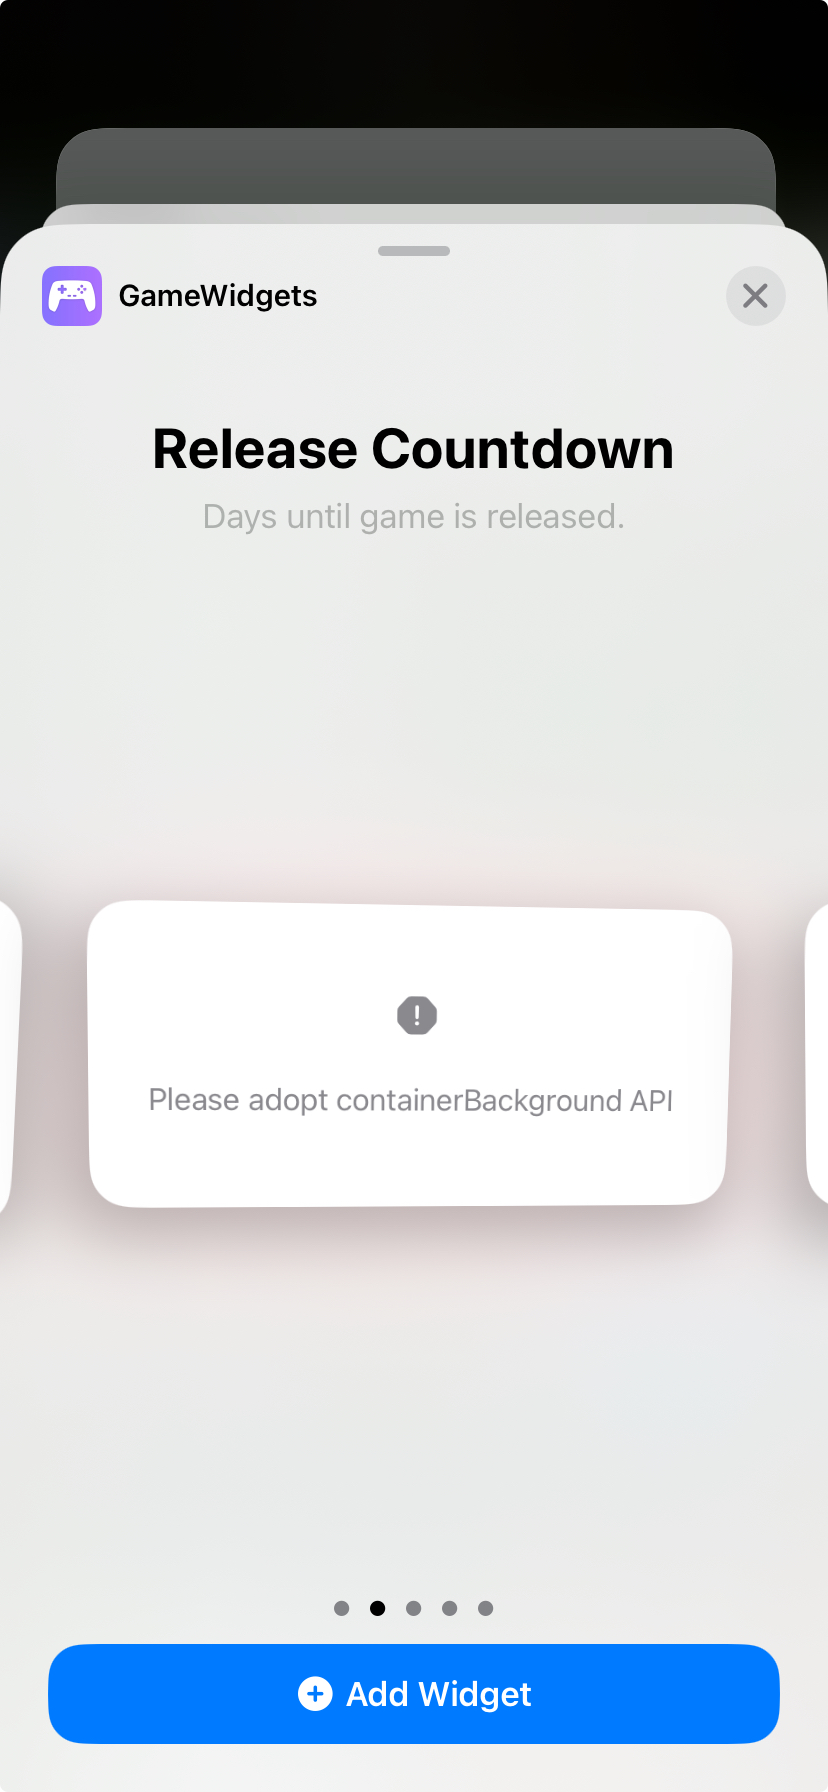 iOS 17 Widgets issue: Please adopt containerBackground API